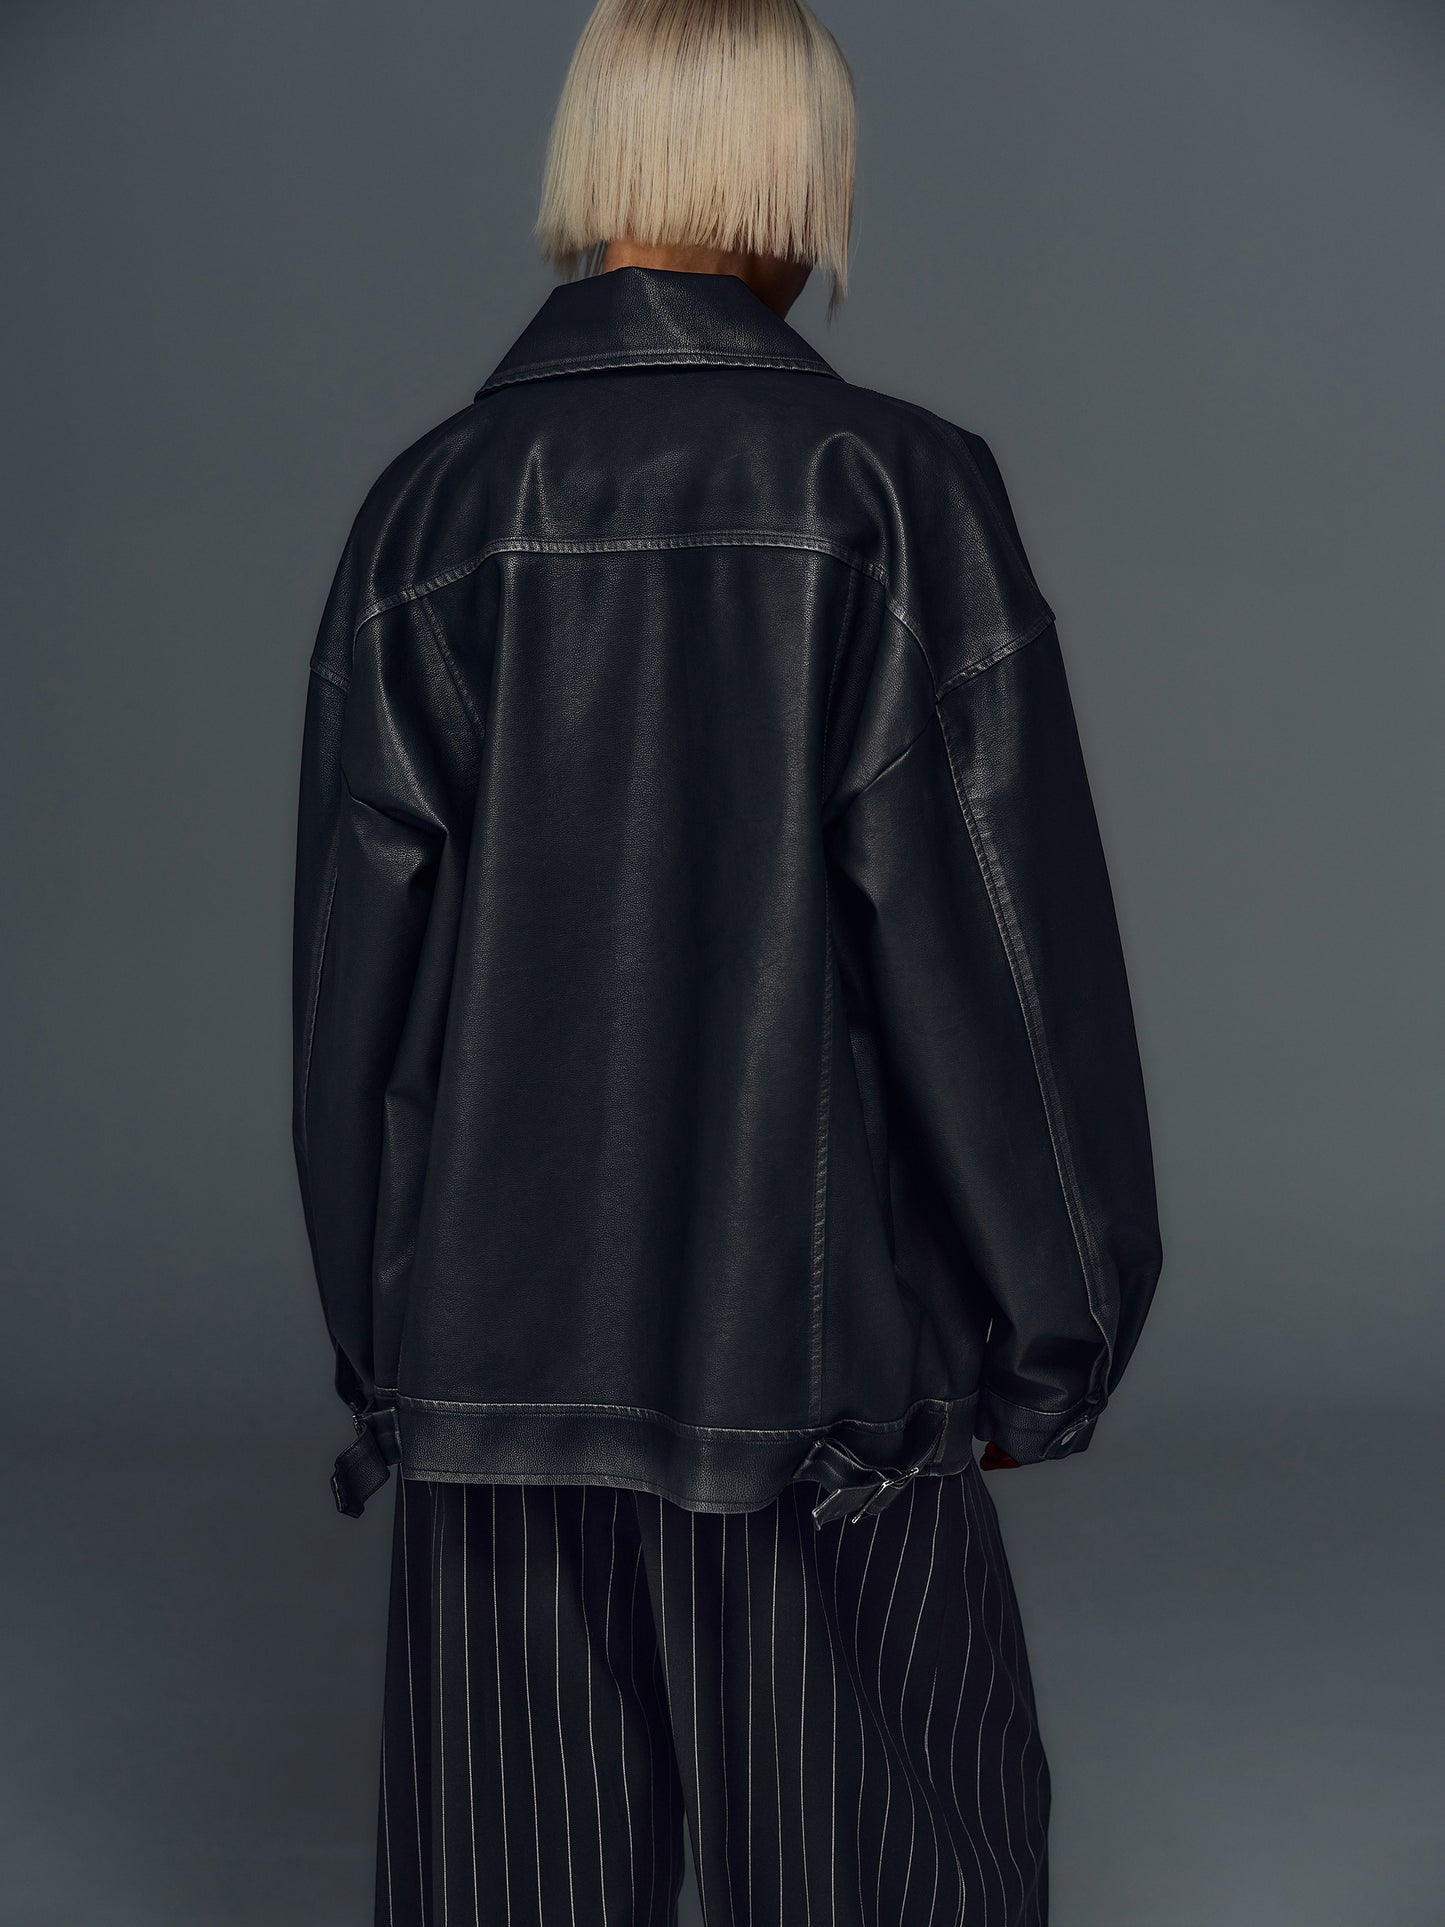 (Pre-order) Vintage Effect Leather Jacket, Black